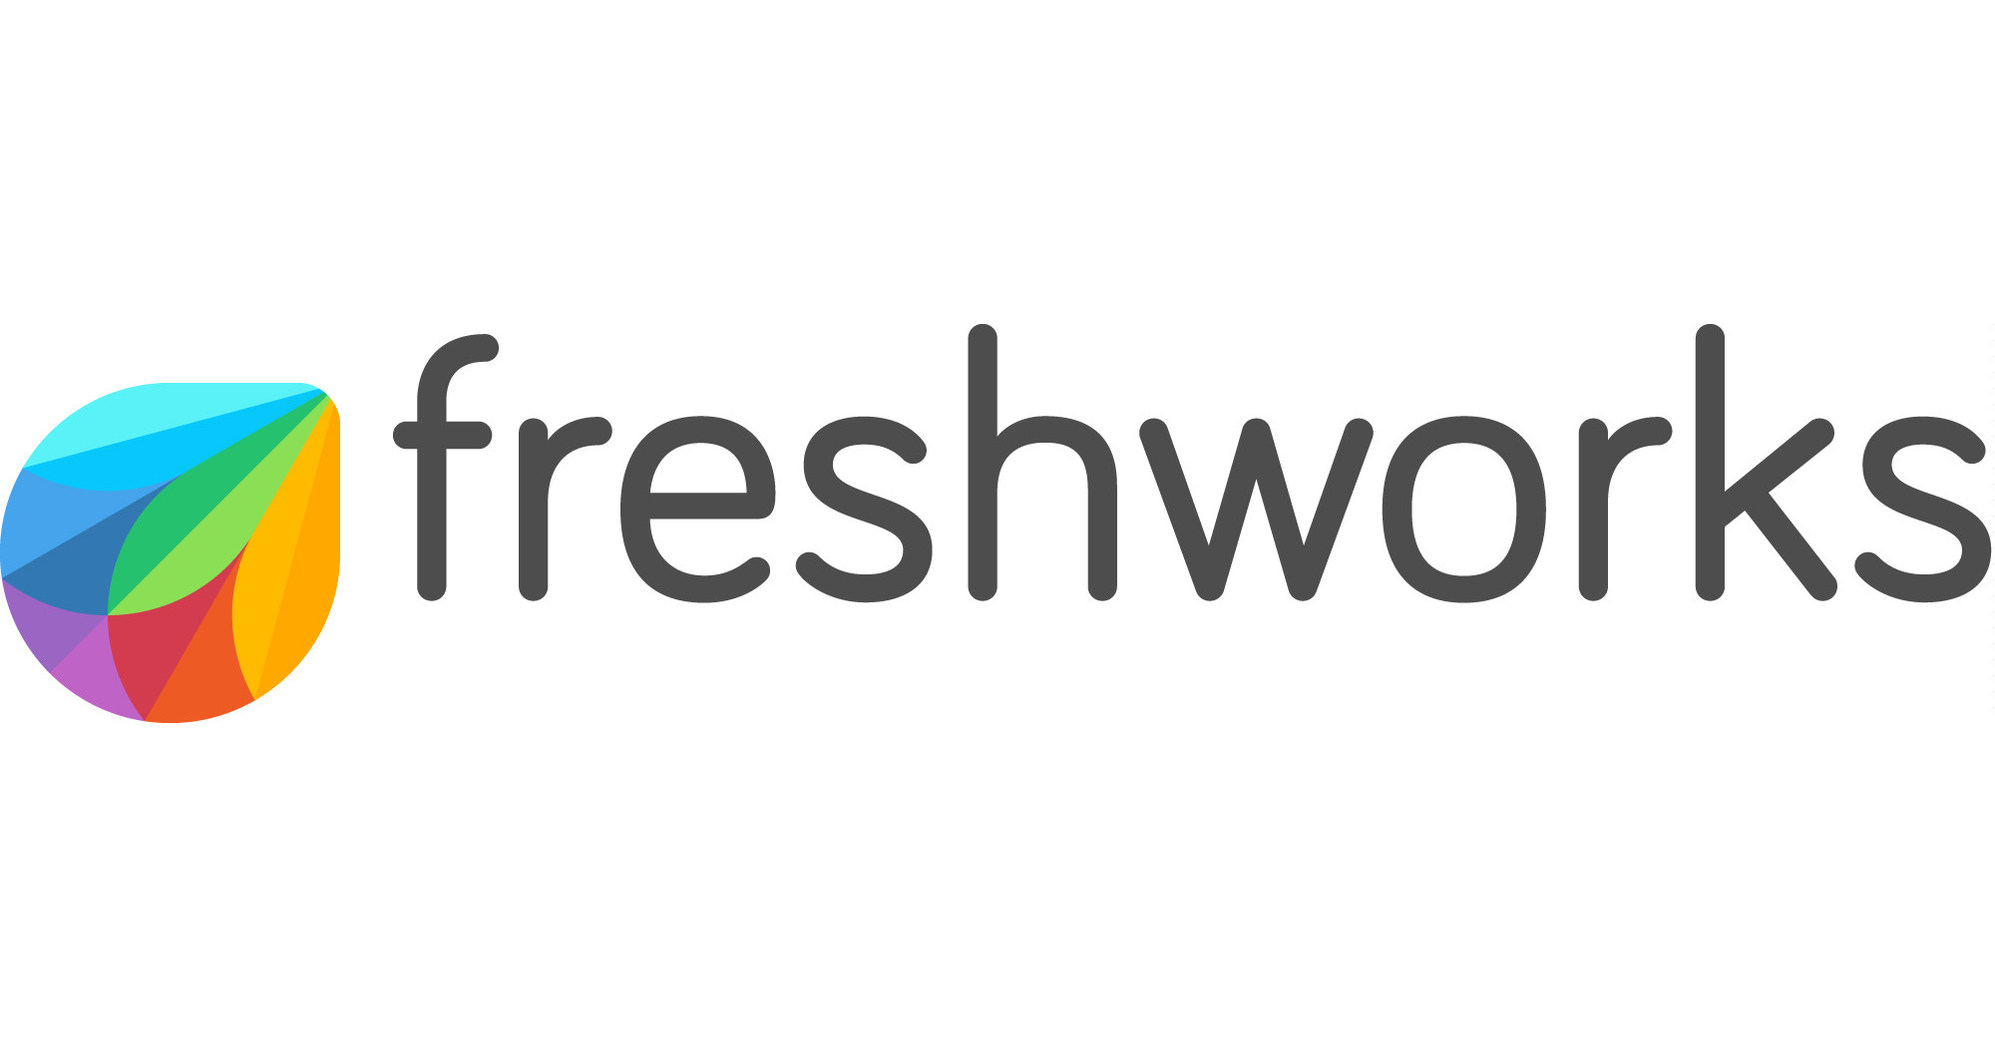 freshworks logo